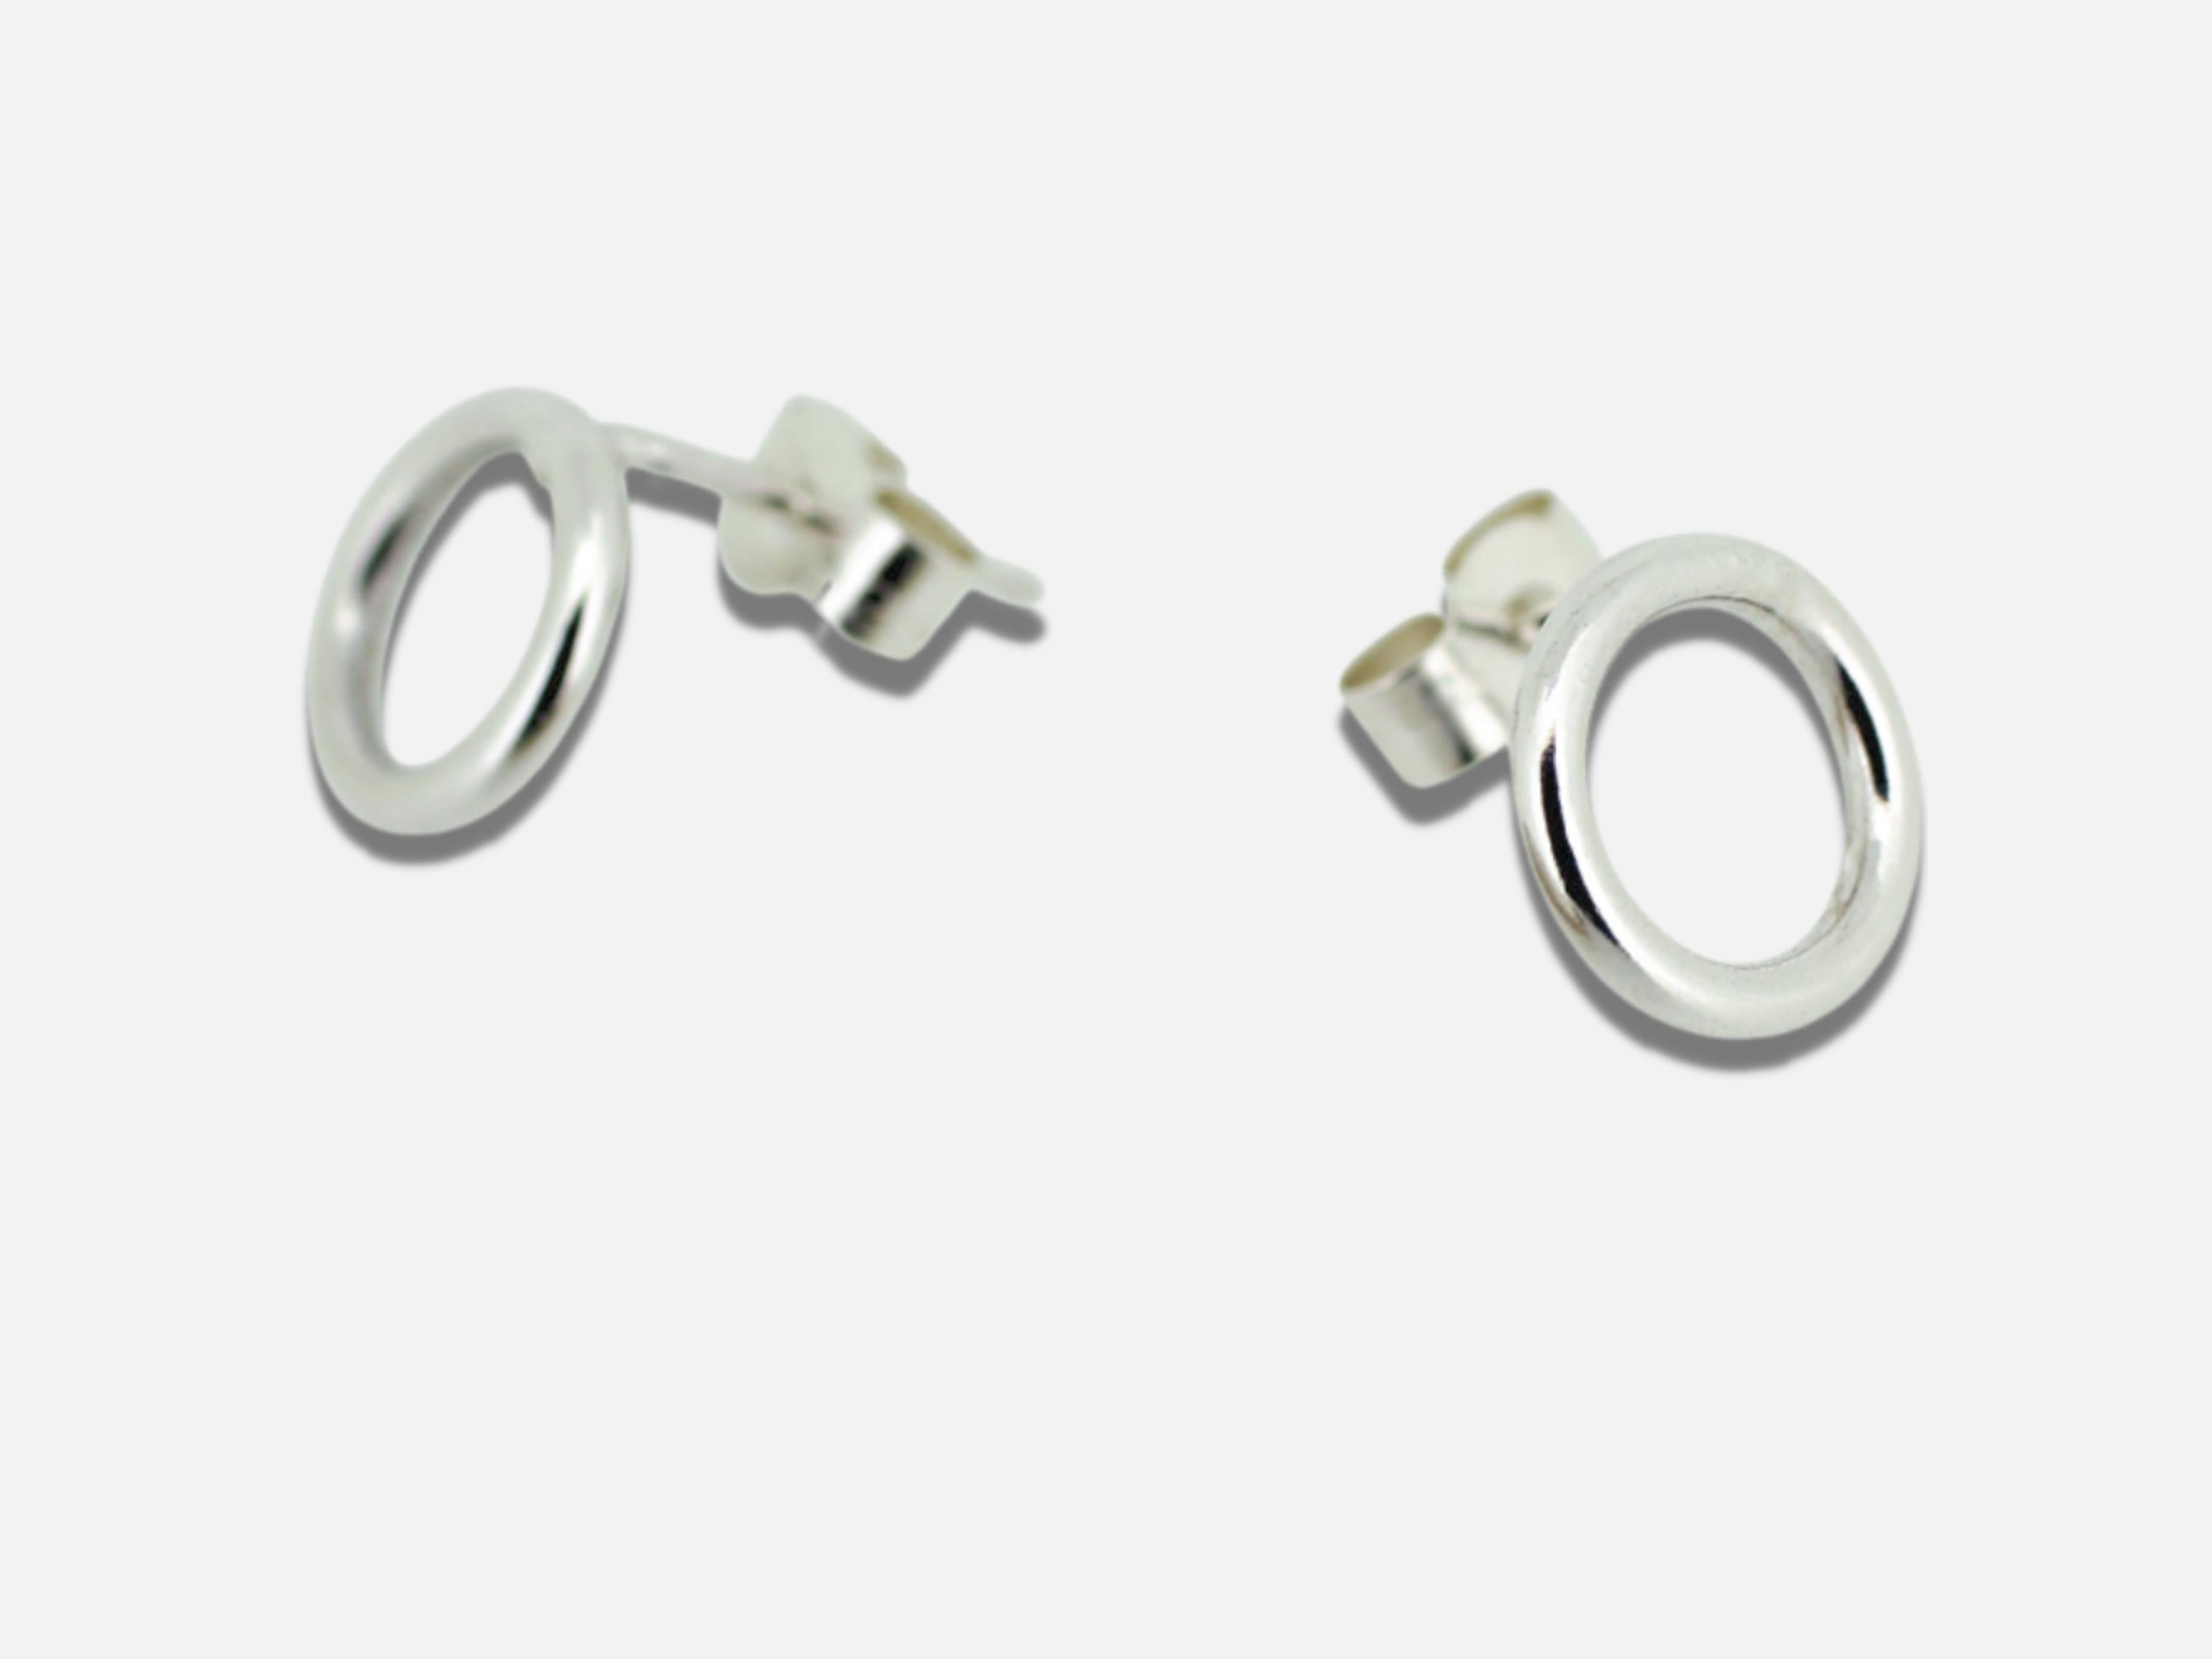 BDSM earrings simple hoops ring of O